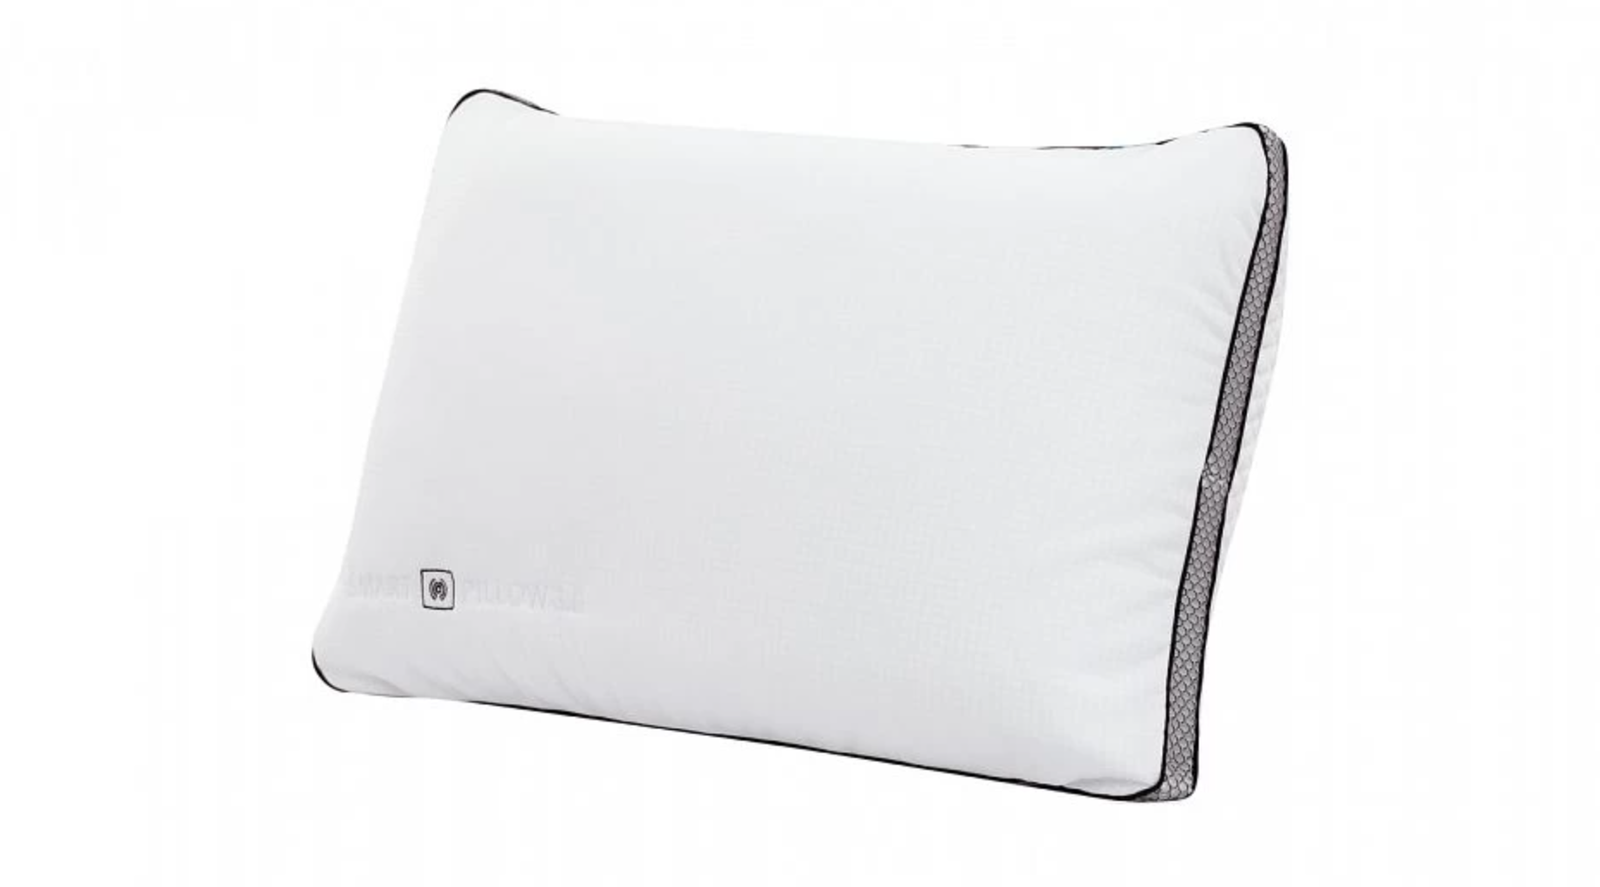 Подушка Smart Pillow Axis Askona 16 800 13 440 руб.